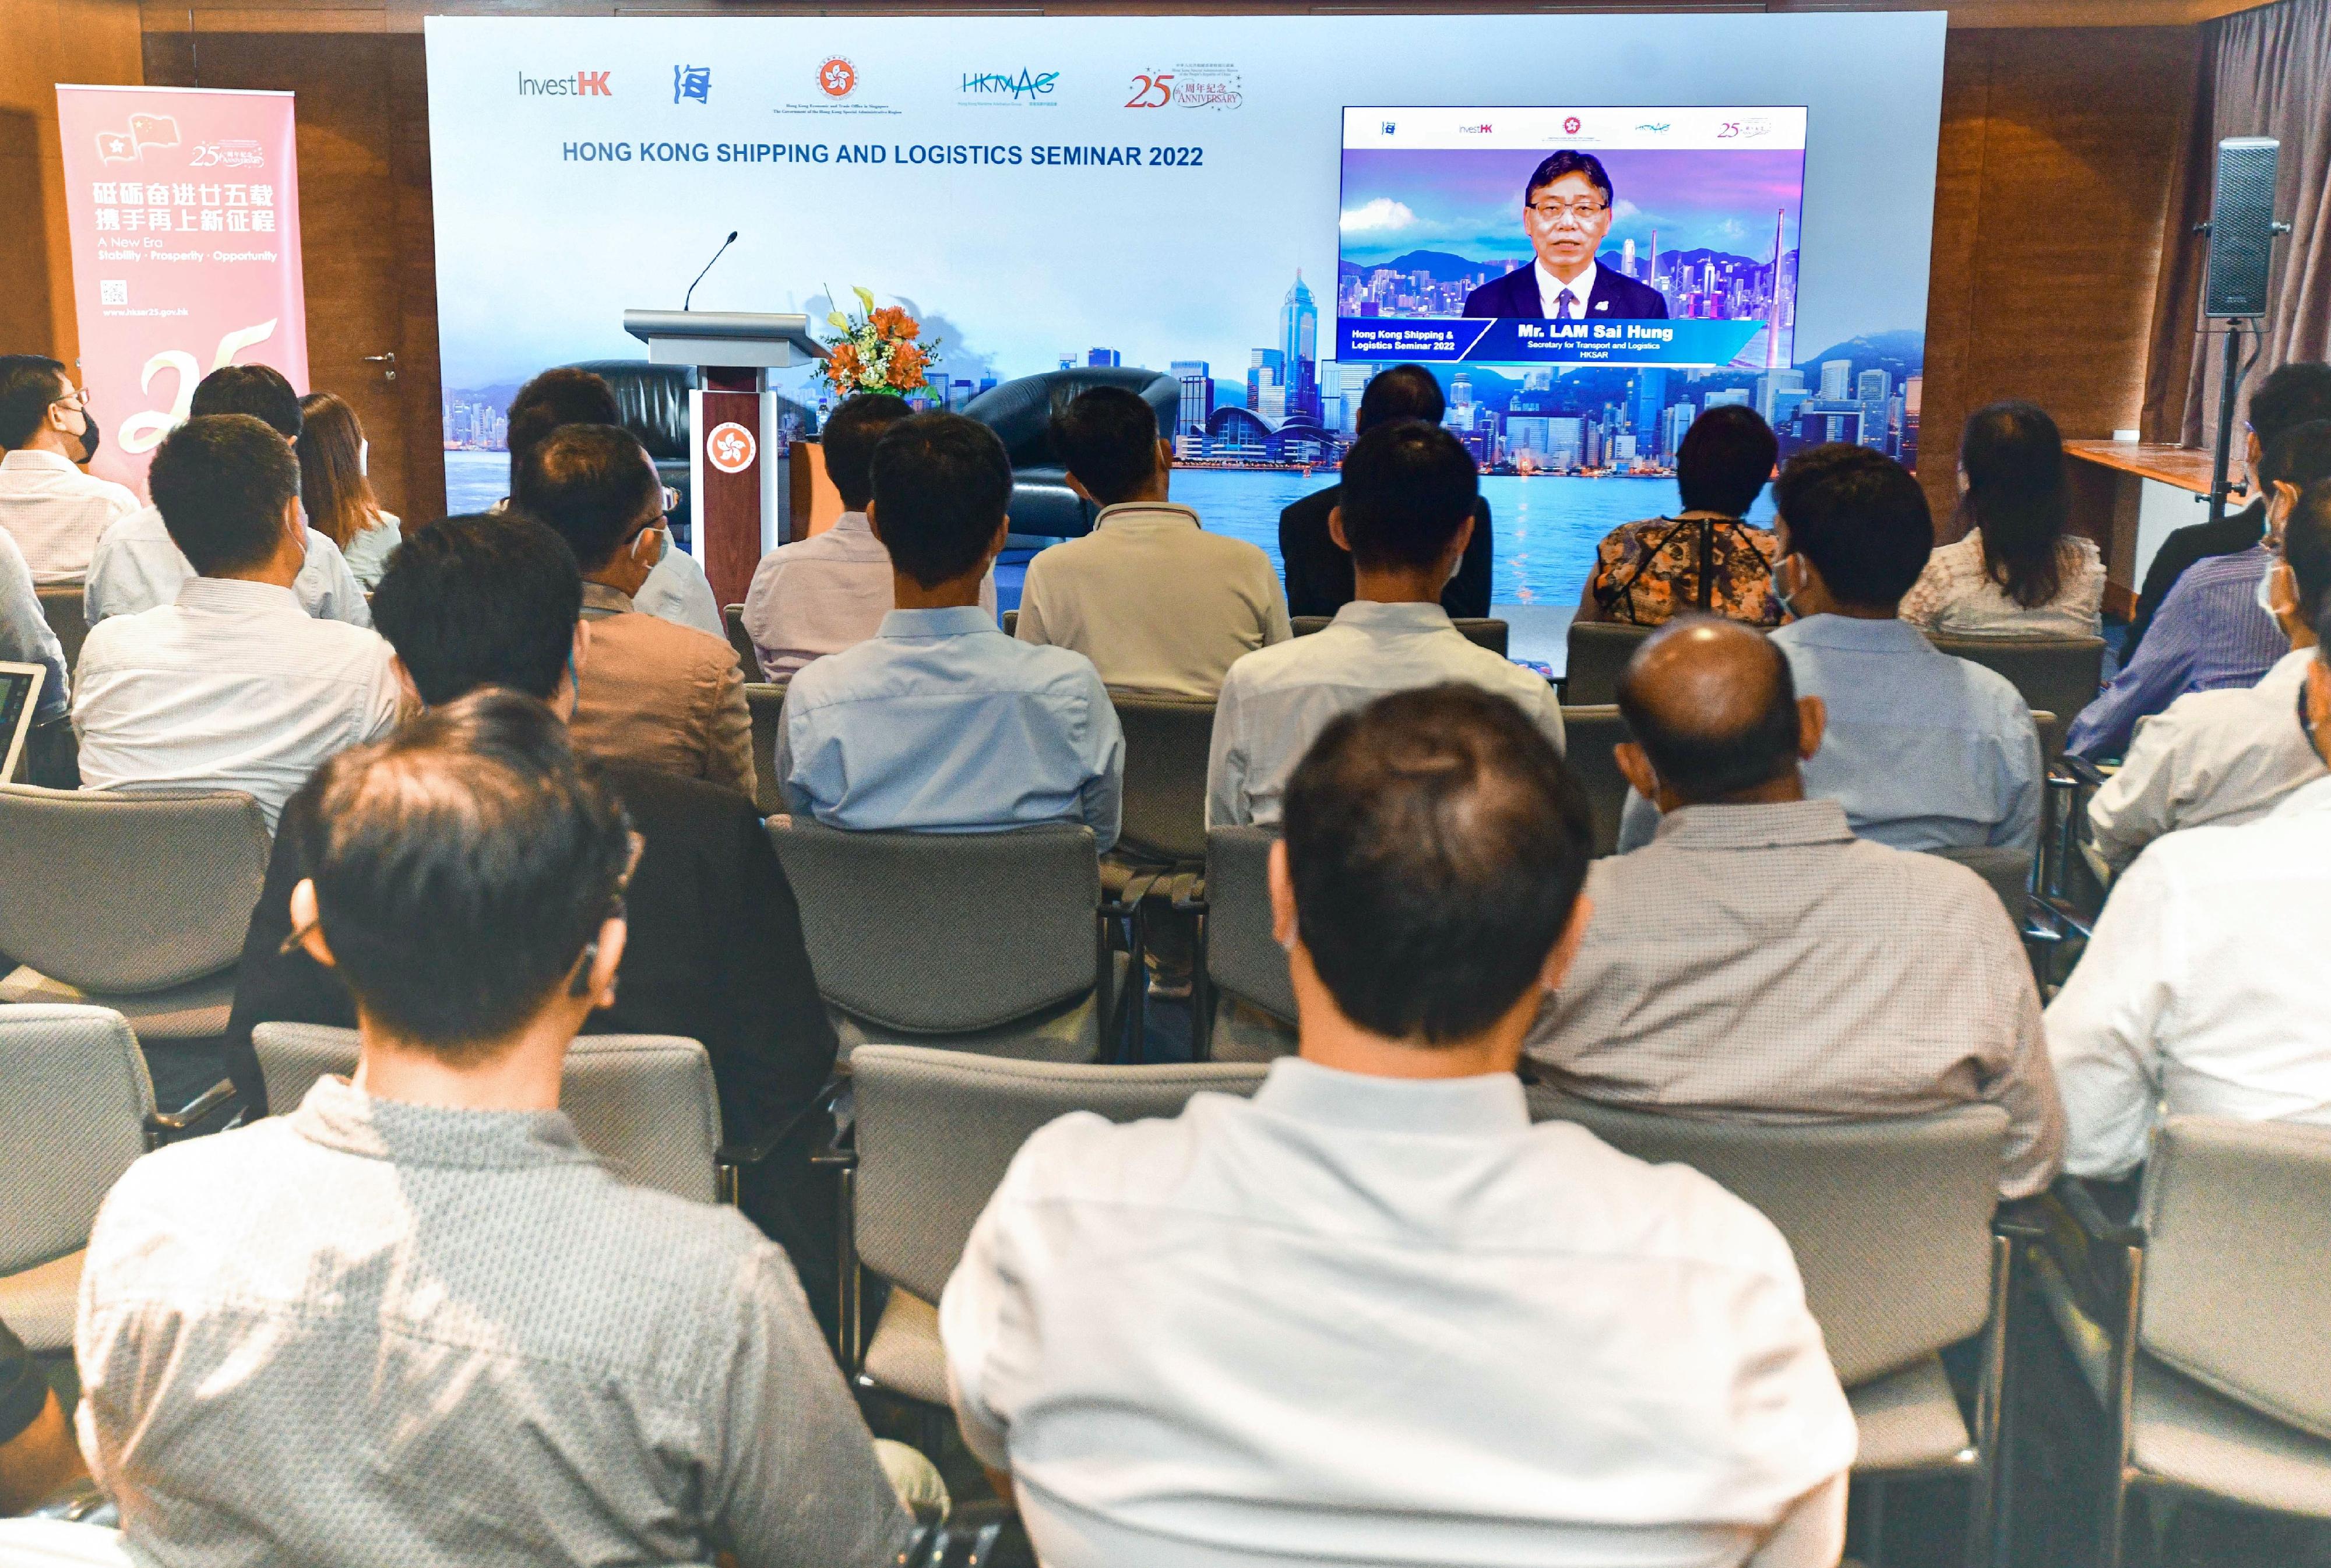 駐新加坡經貿辦舉辦航運及物流商務研討會慶祝香港特別行政區成立二十五周年